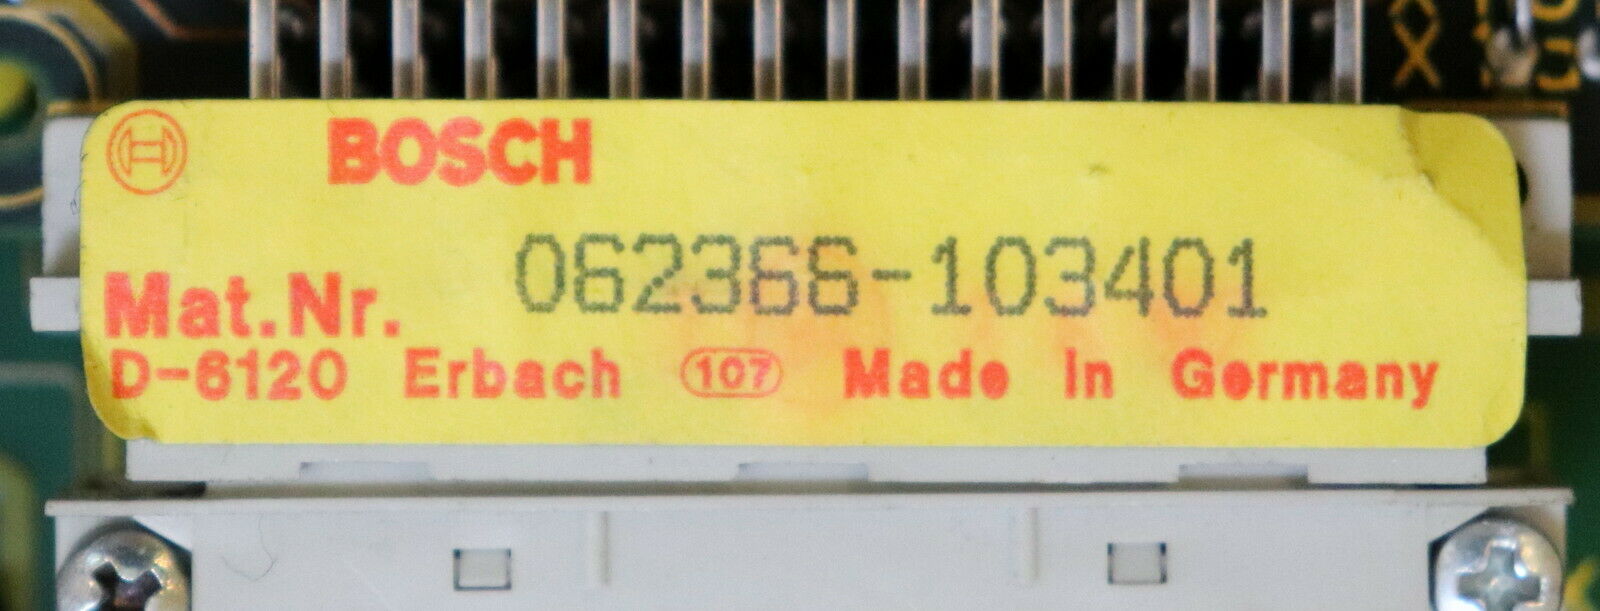 BOSCH Speichermodul M601 Mat.Nr. 064837-105401 mit EPROM 64k Nr. 062366-103401